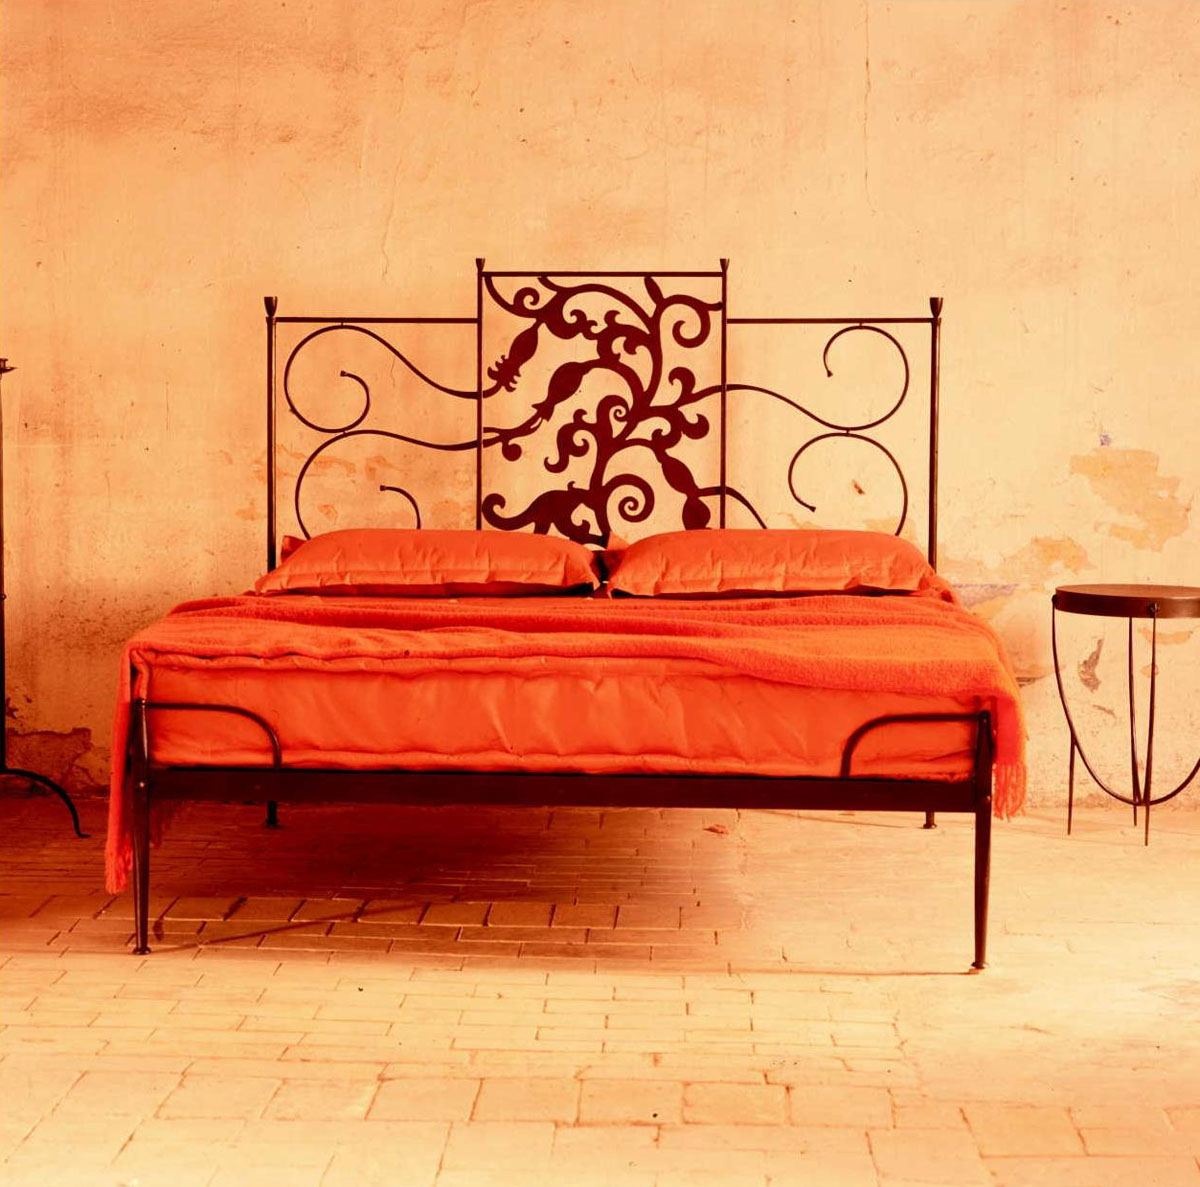 Tuscan Beds Design Ideas Idesignarch Interior Design